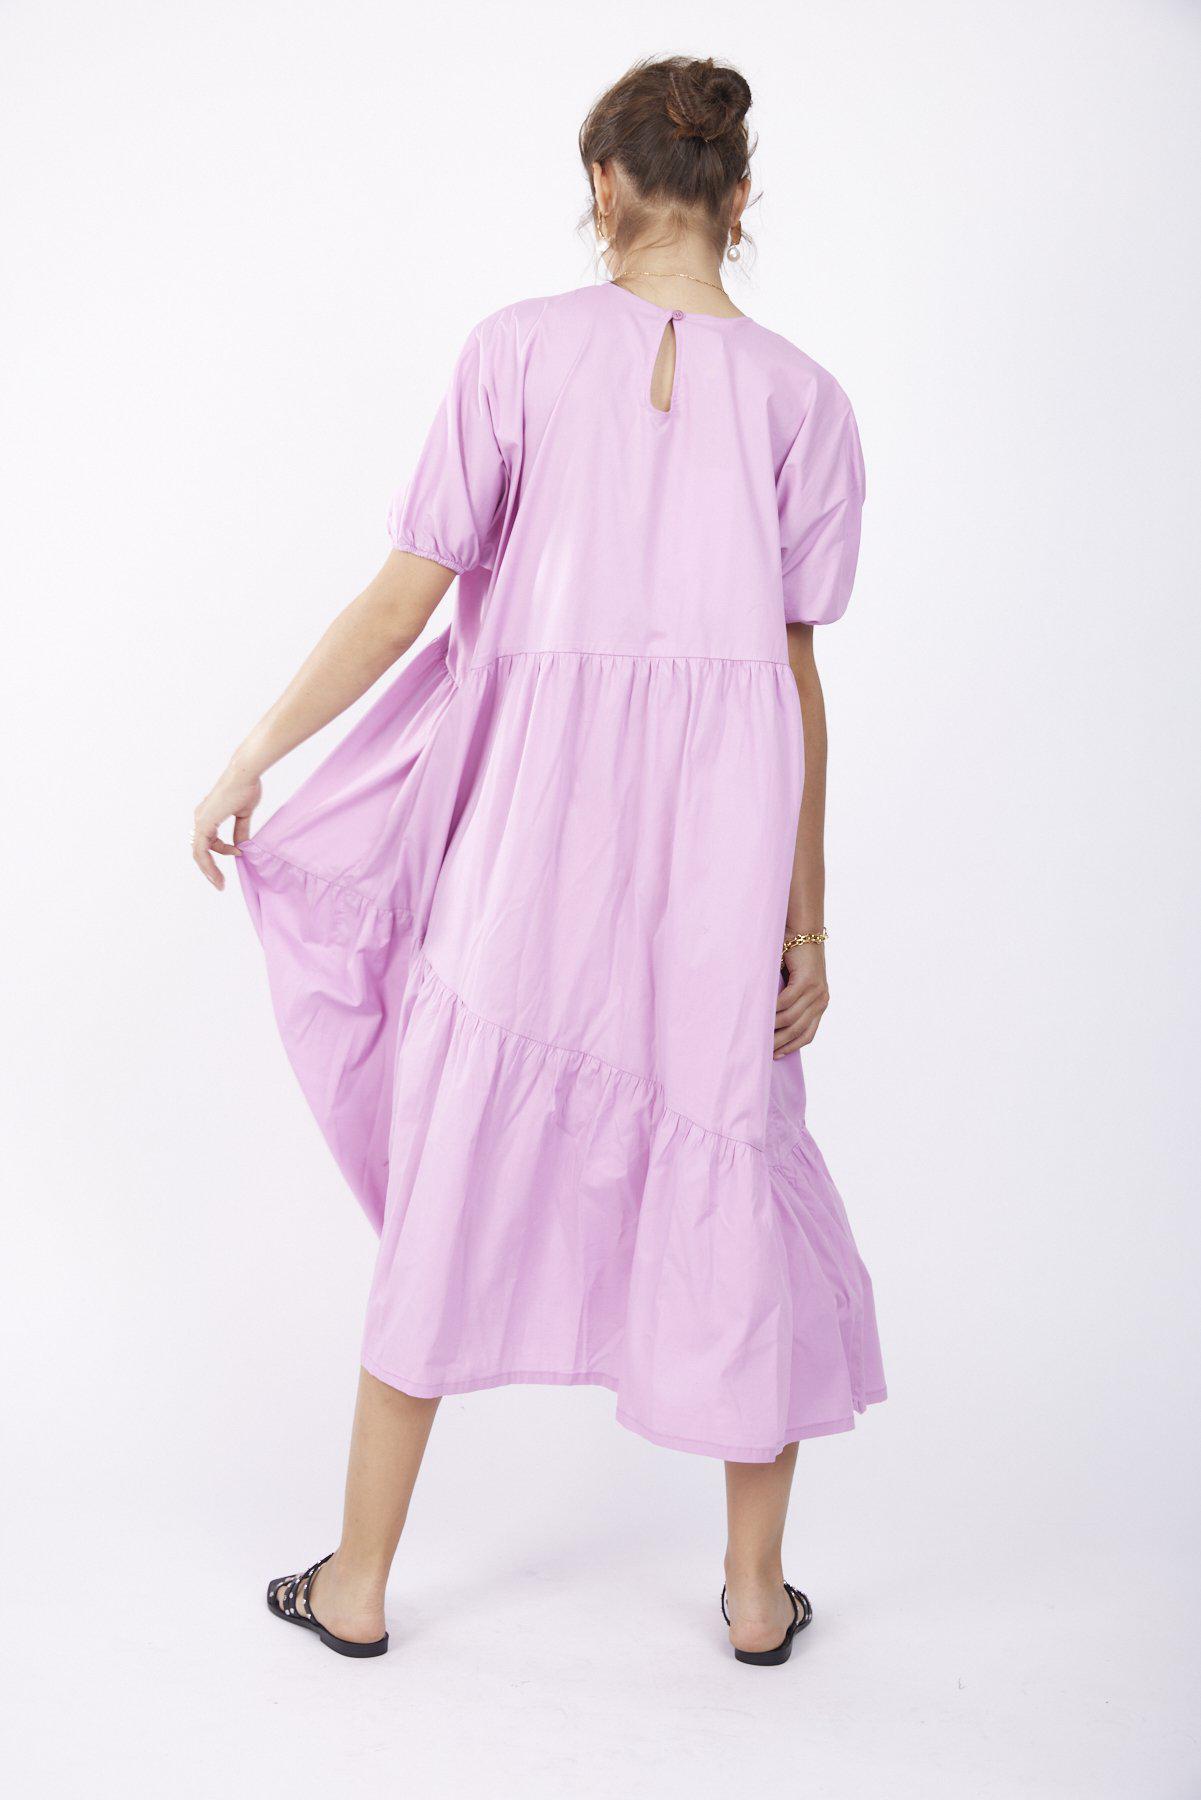 שמלת ליסבון בצבע ורוד - Razili Studio